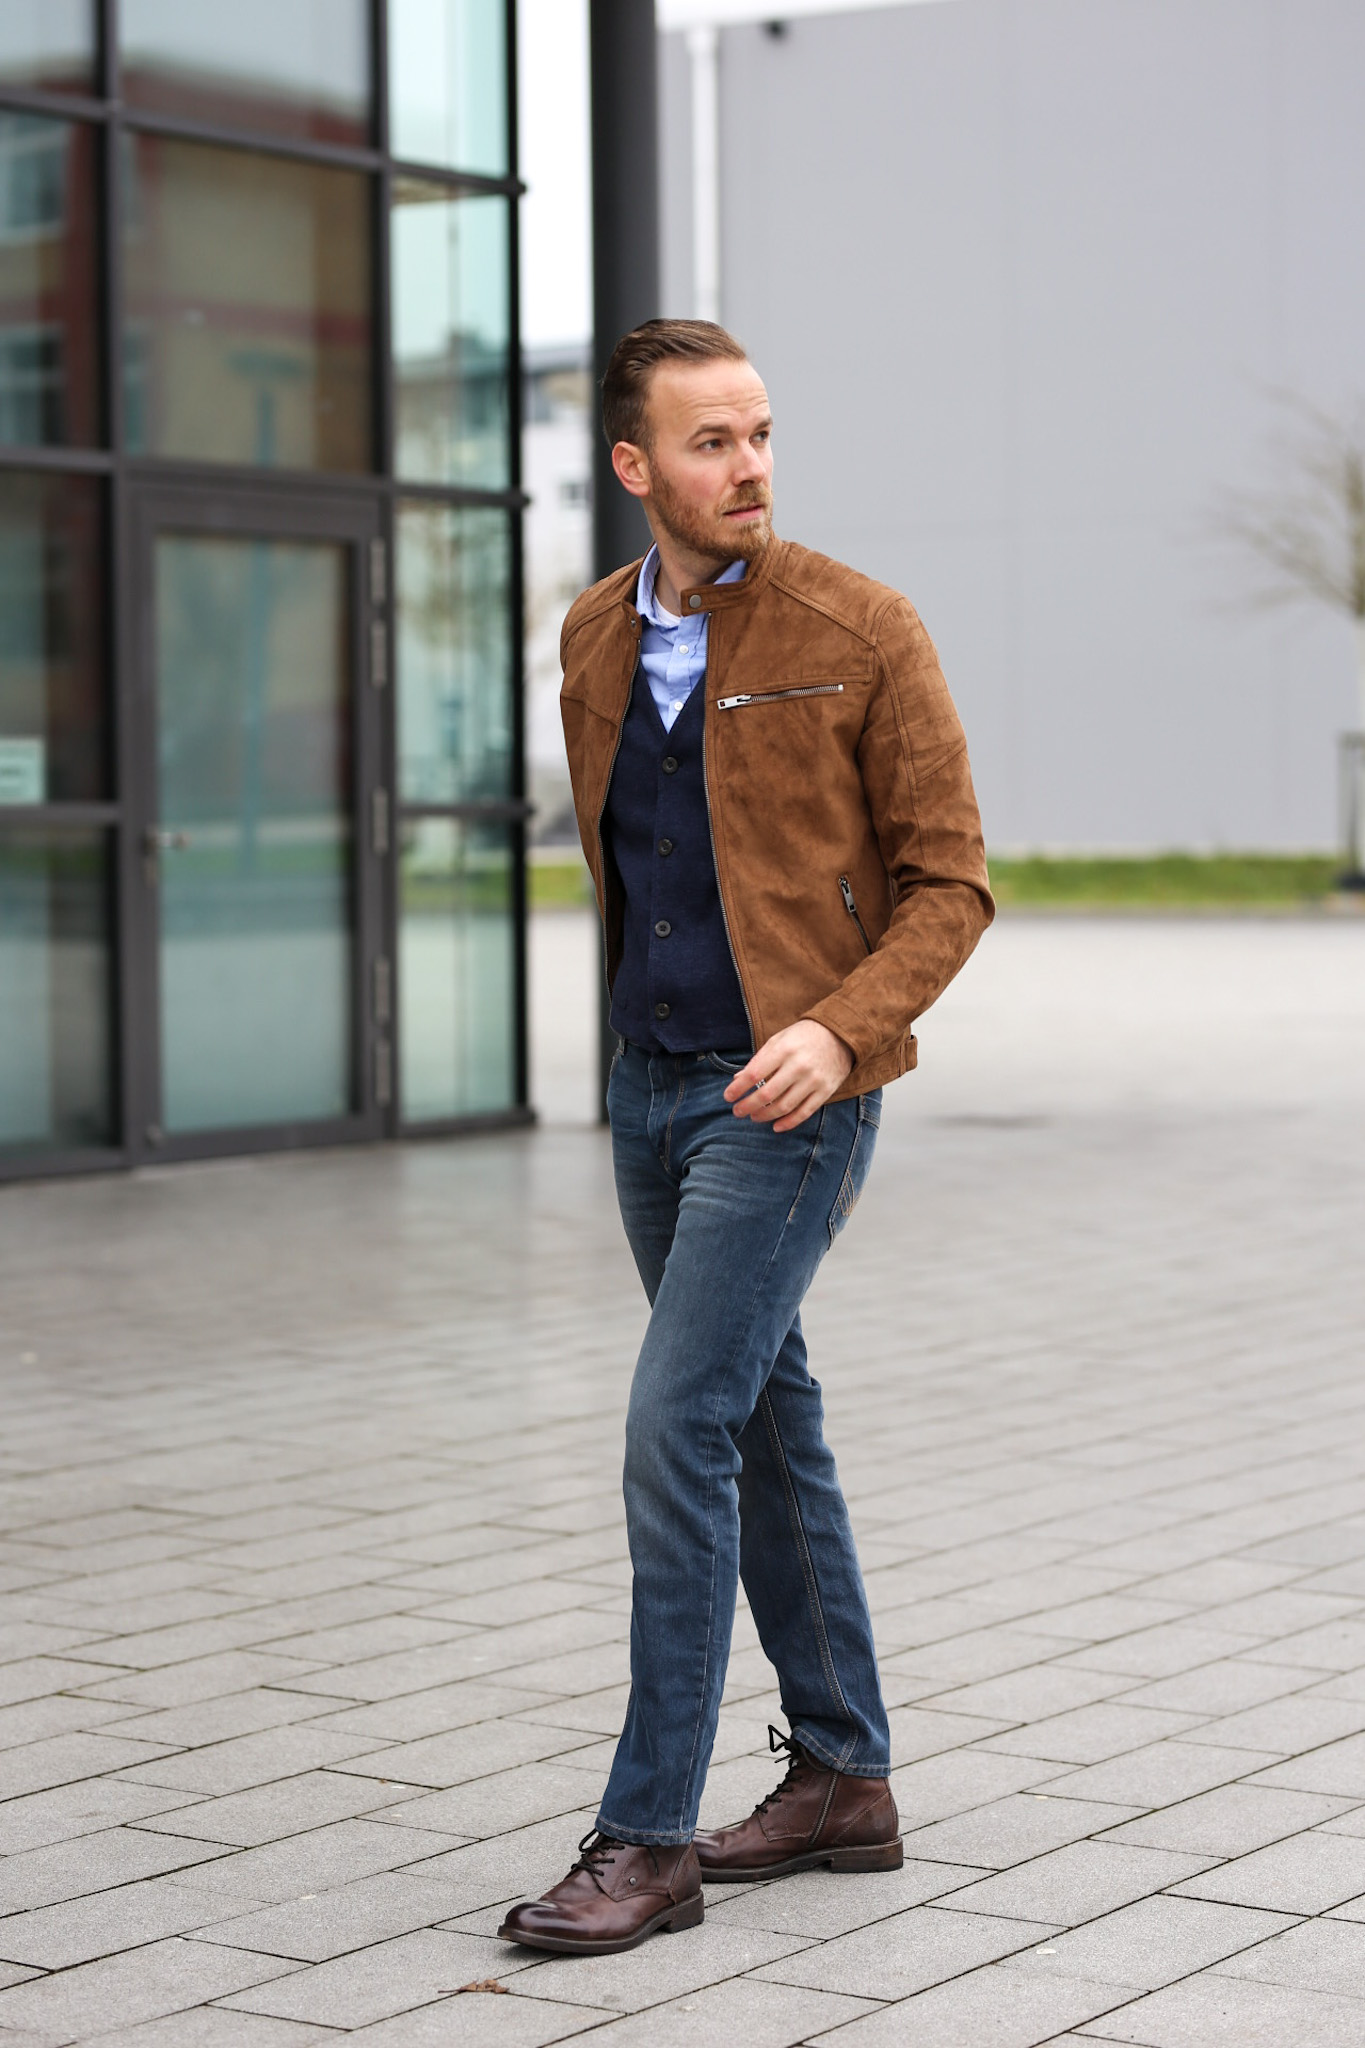 Männer Outfit Inspiration für das neue Jahr - 3 Looks - 3 Styles Blogger Bernd hower berndhower Blog fashion männer herrenmode mode 